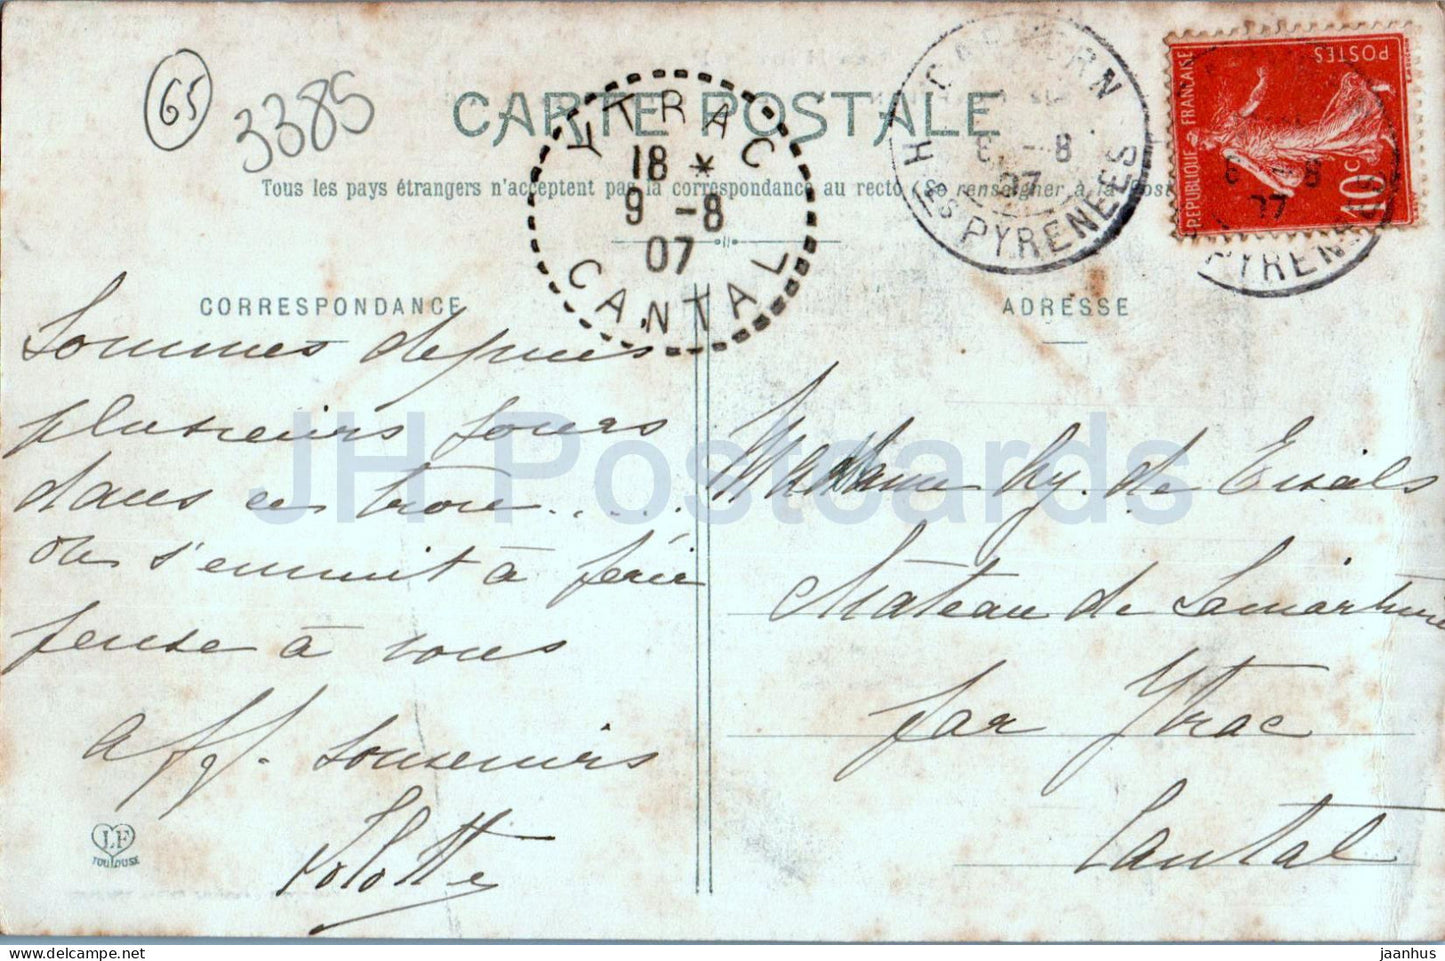 Capvern - Vue Generale en Venant de la Gare - Les Hautes Pyrenees - 372 - old postcard - 1907 - France - used